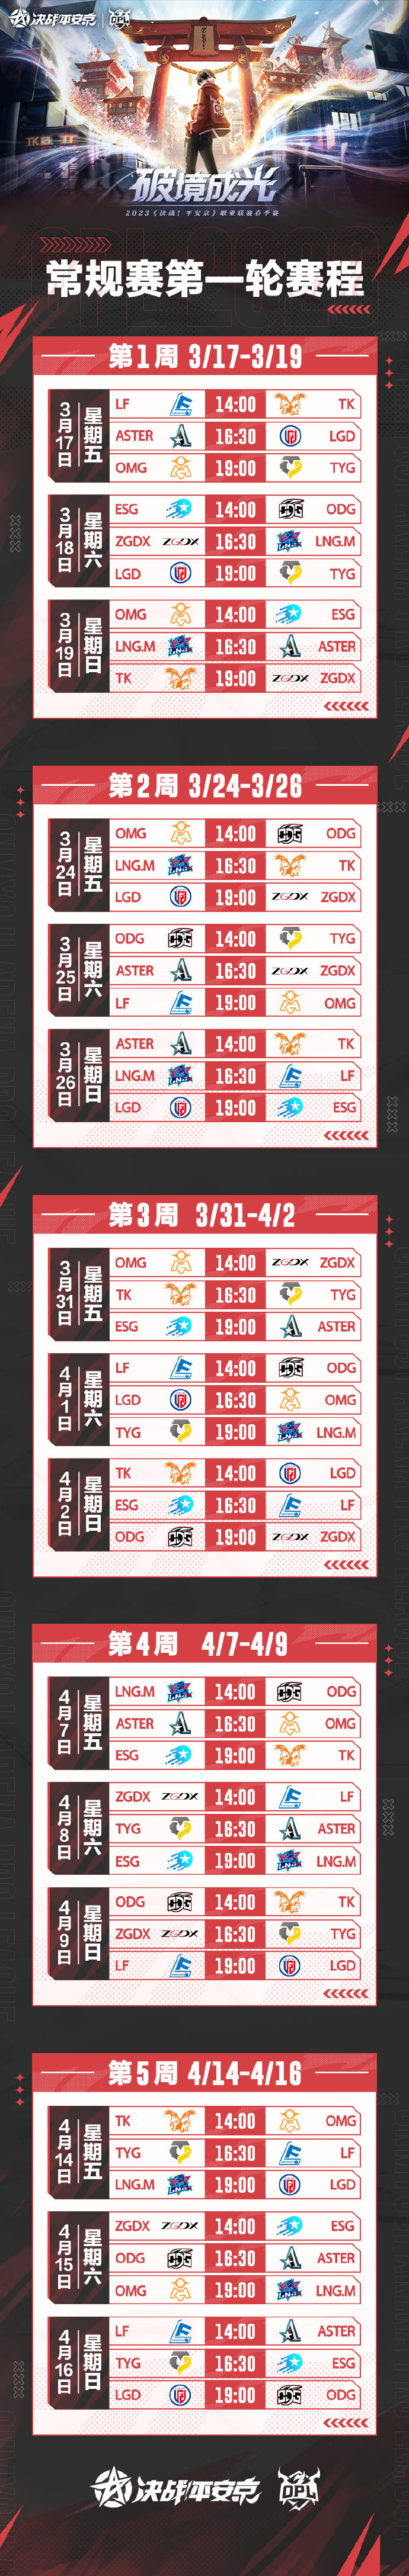 《决战！平安京》2023OPL春季赛赛事日历与赛程公布